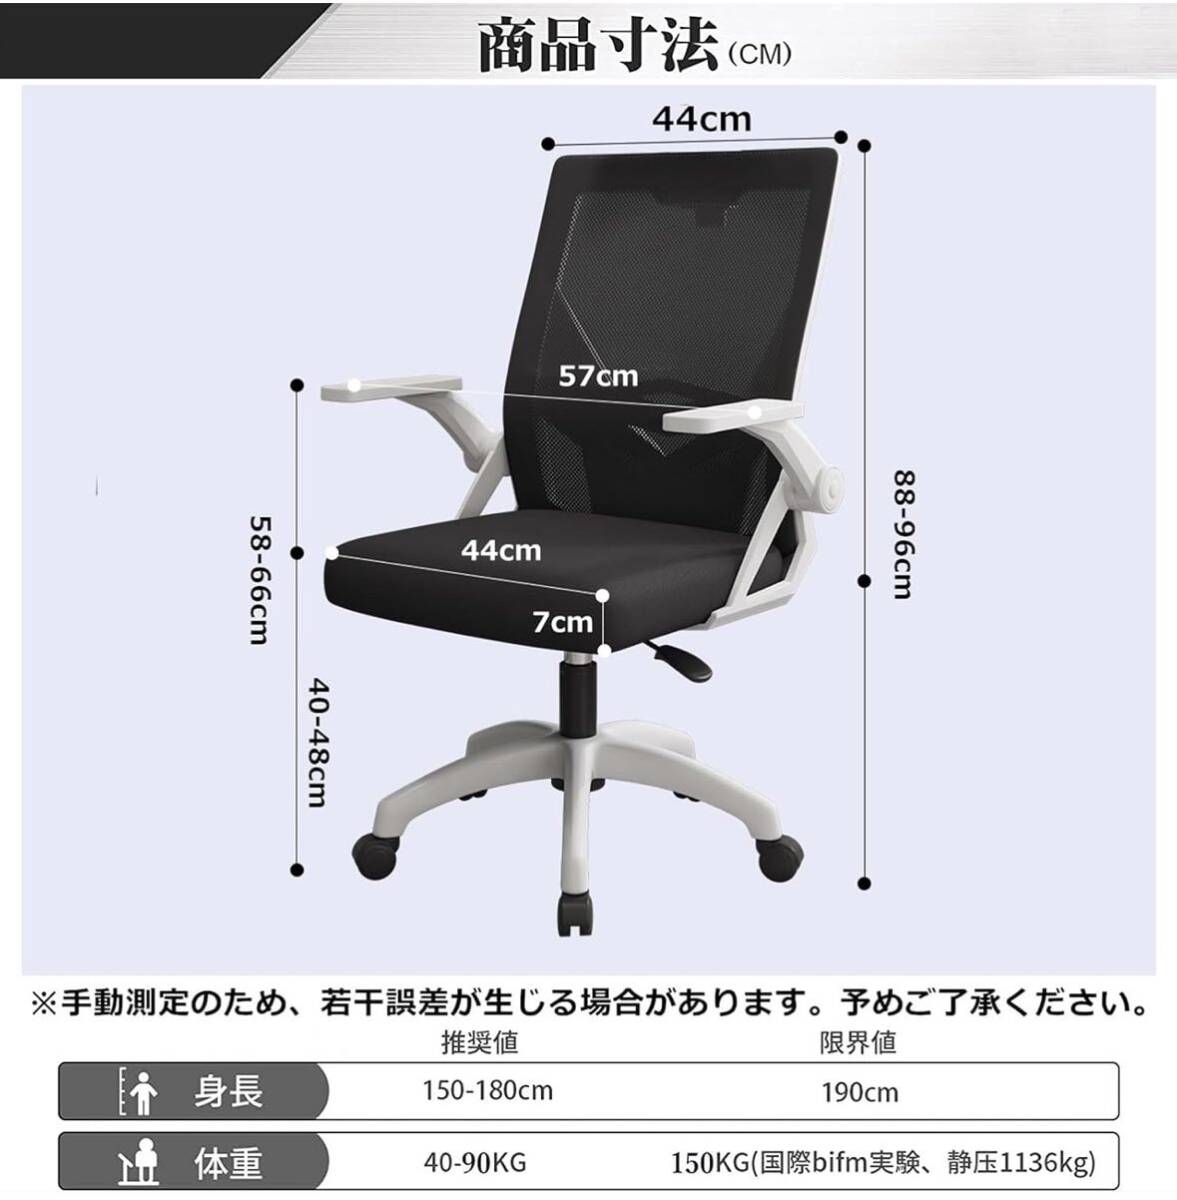 オフィスチェア 椅子 テレワーク 疲れない デスクチェア 人間工学椅子 跳ね上げ式アームレスト 通気性メッシュ ロッキング機能 在宅勤務の画像2